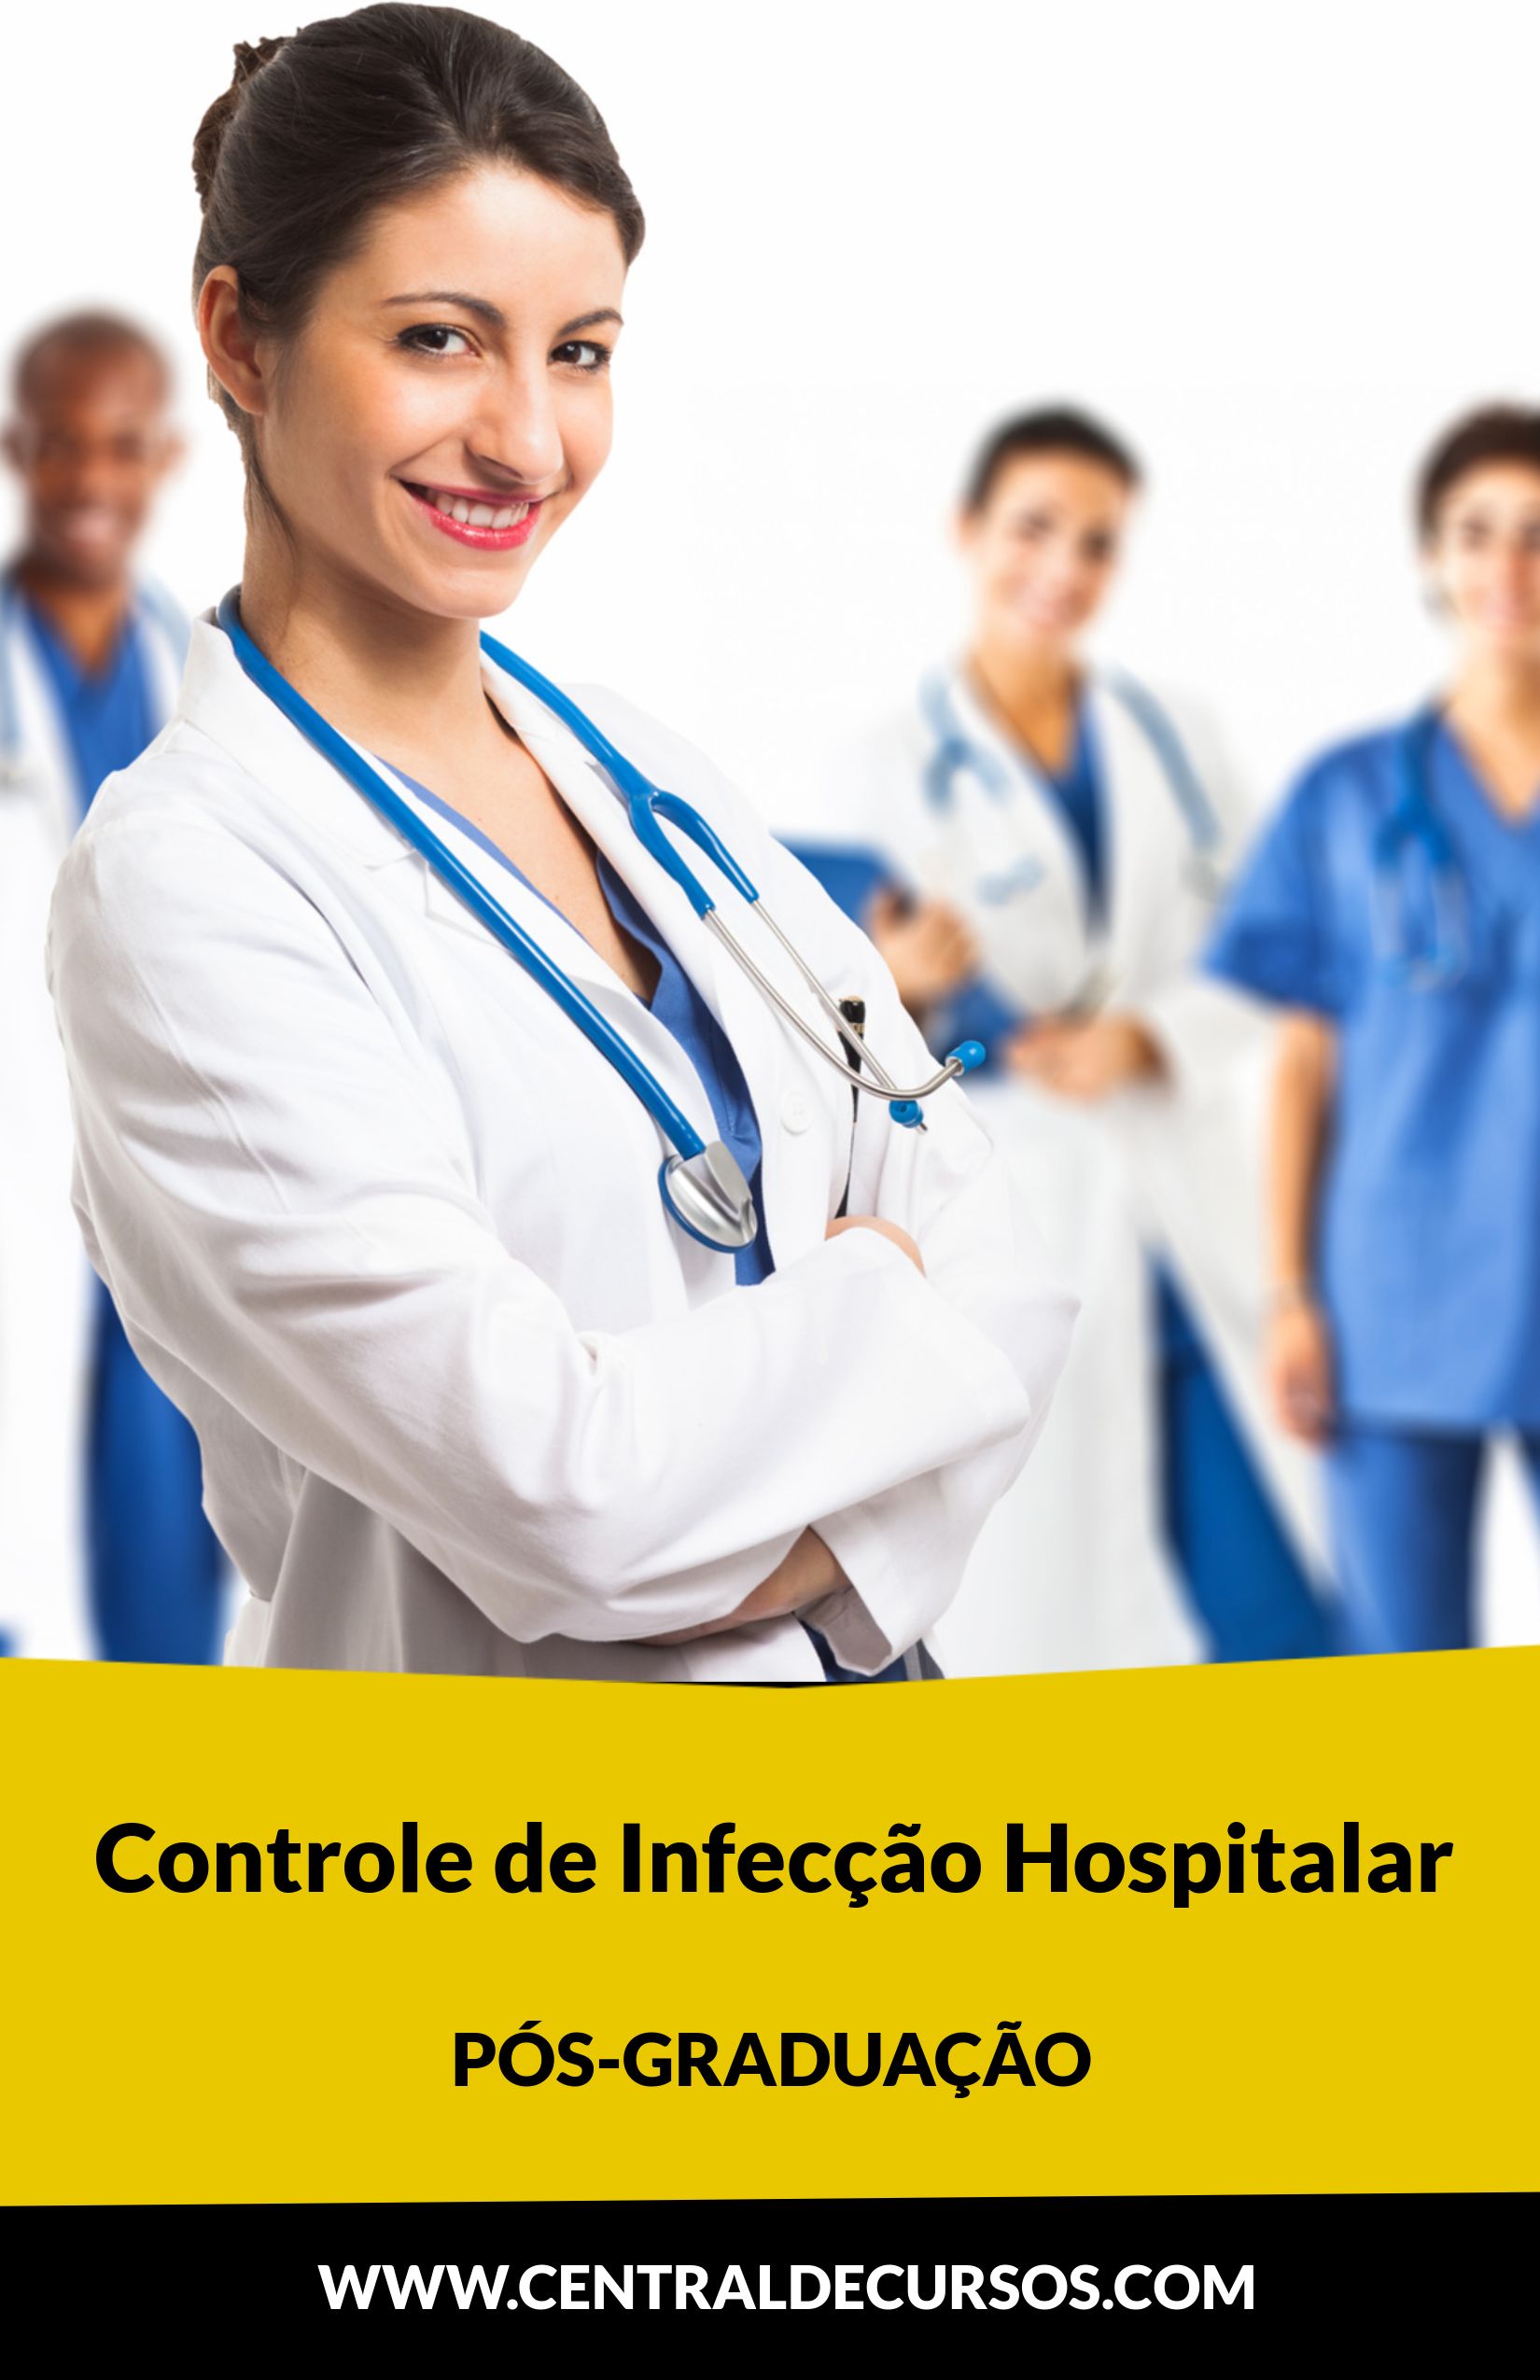 Pós-graduação em controle de infecção hospitalar